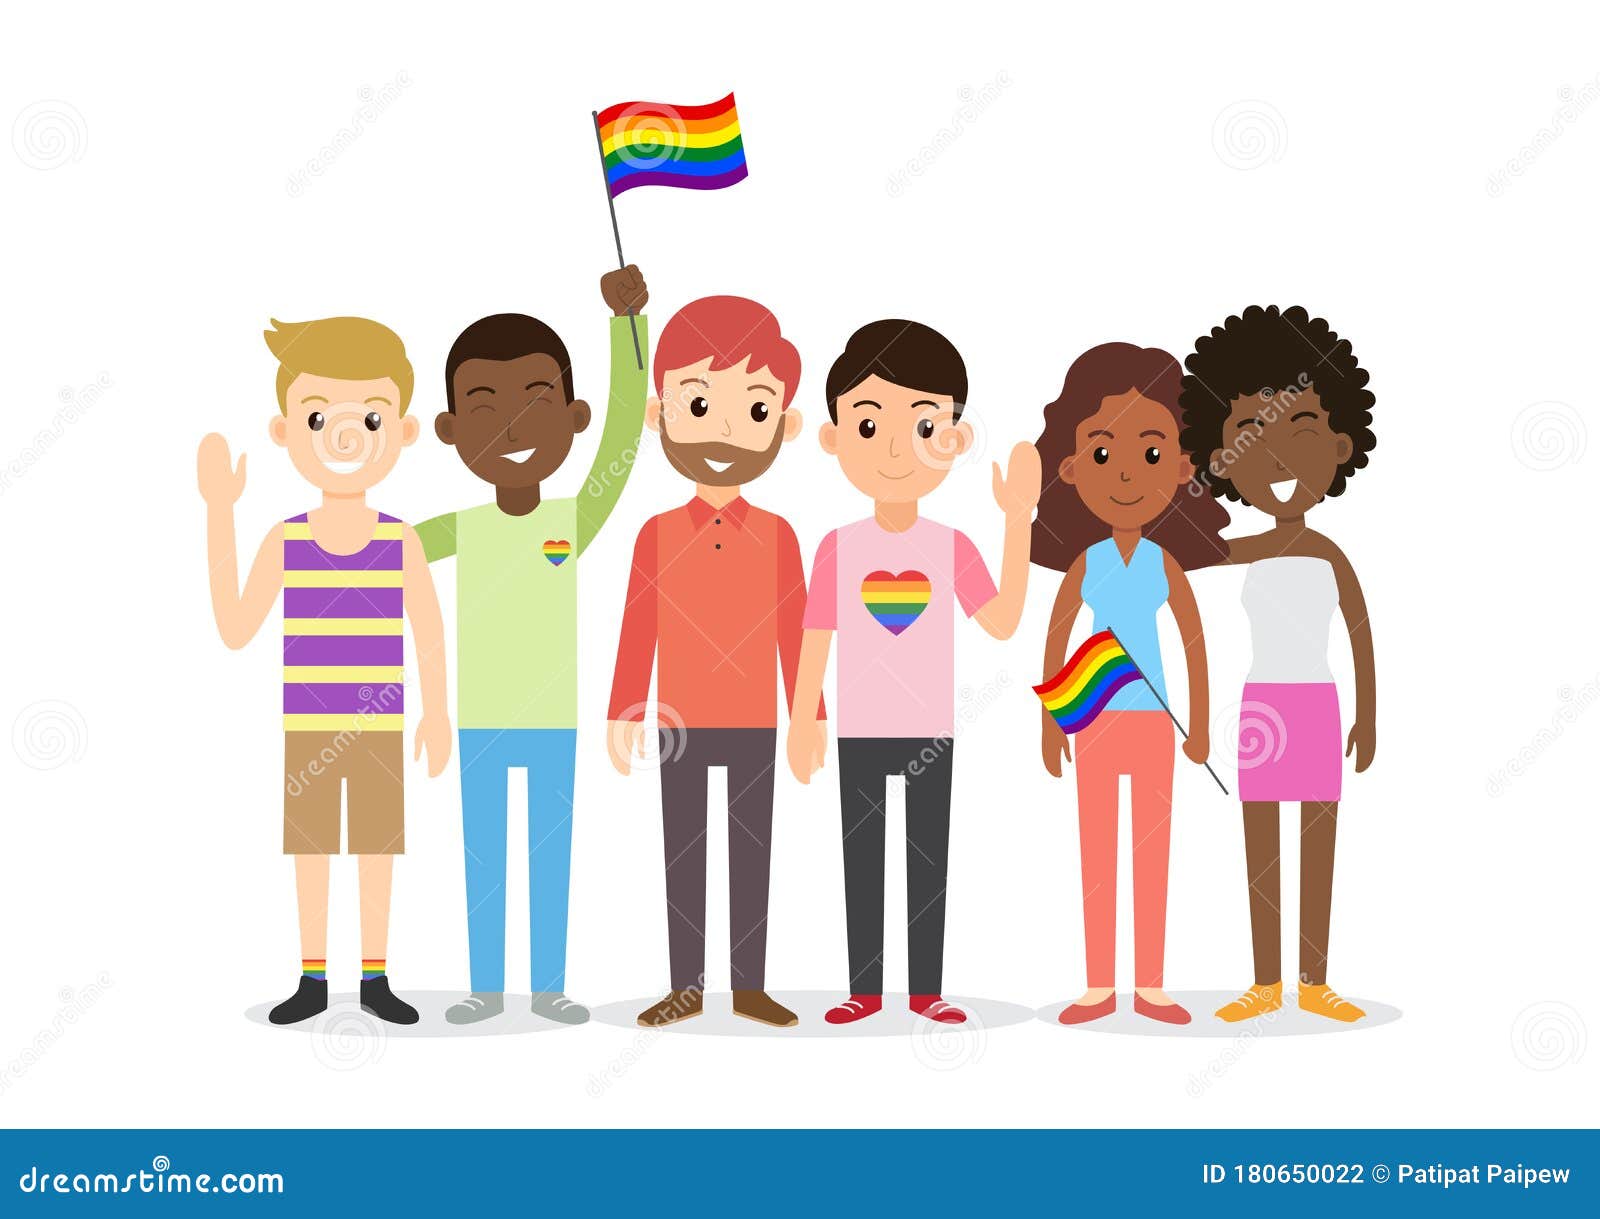 卡通驕傲月手繪同性戀插圖, 橫額, 同性戀者, 手繪竽素材圖案，PSD和PNG圖片免費下載